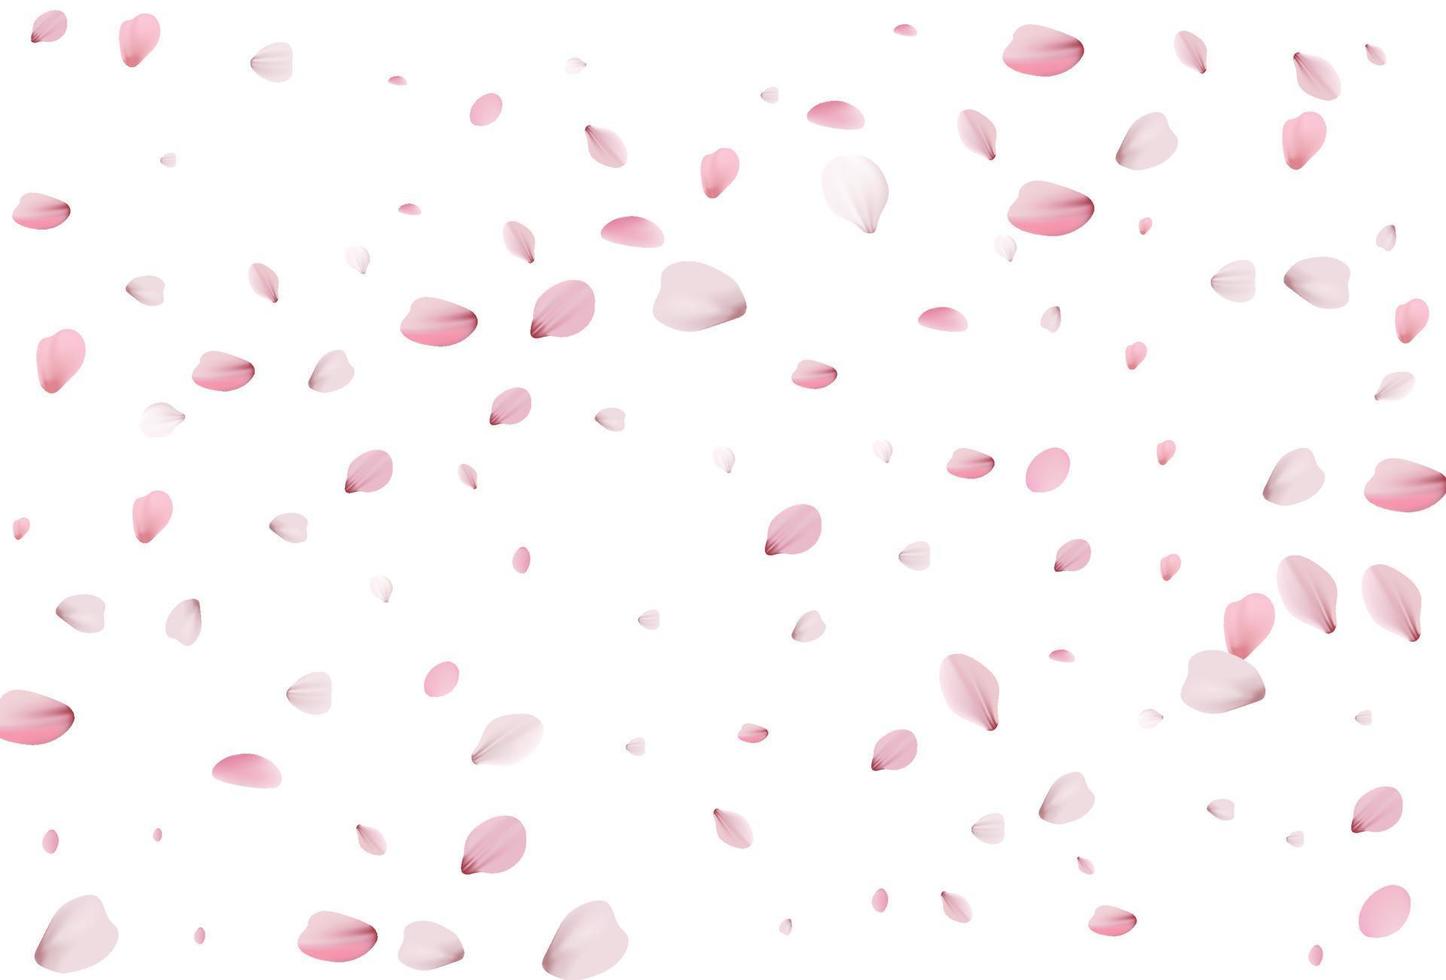 Sakura petals. Cherry petals backdrop vector